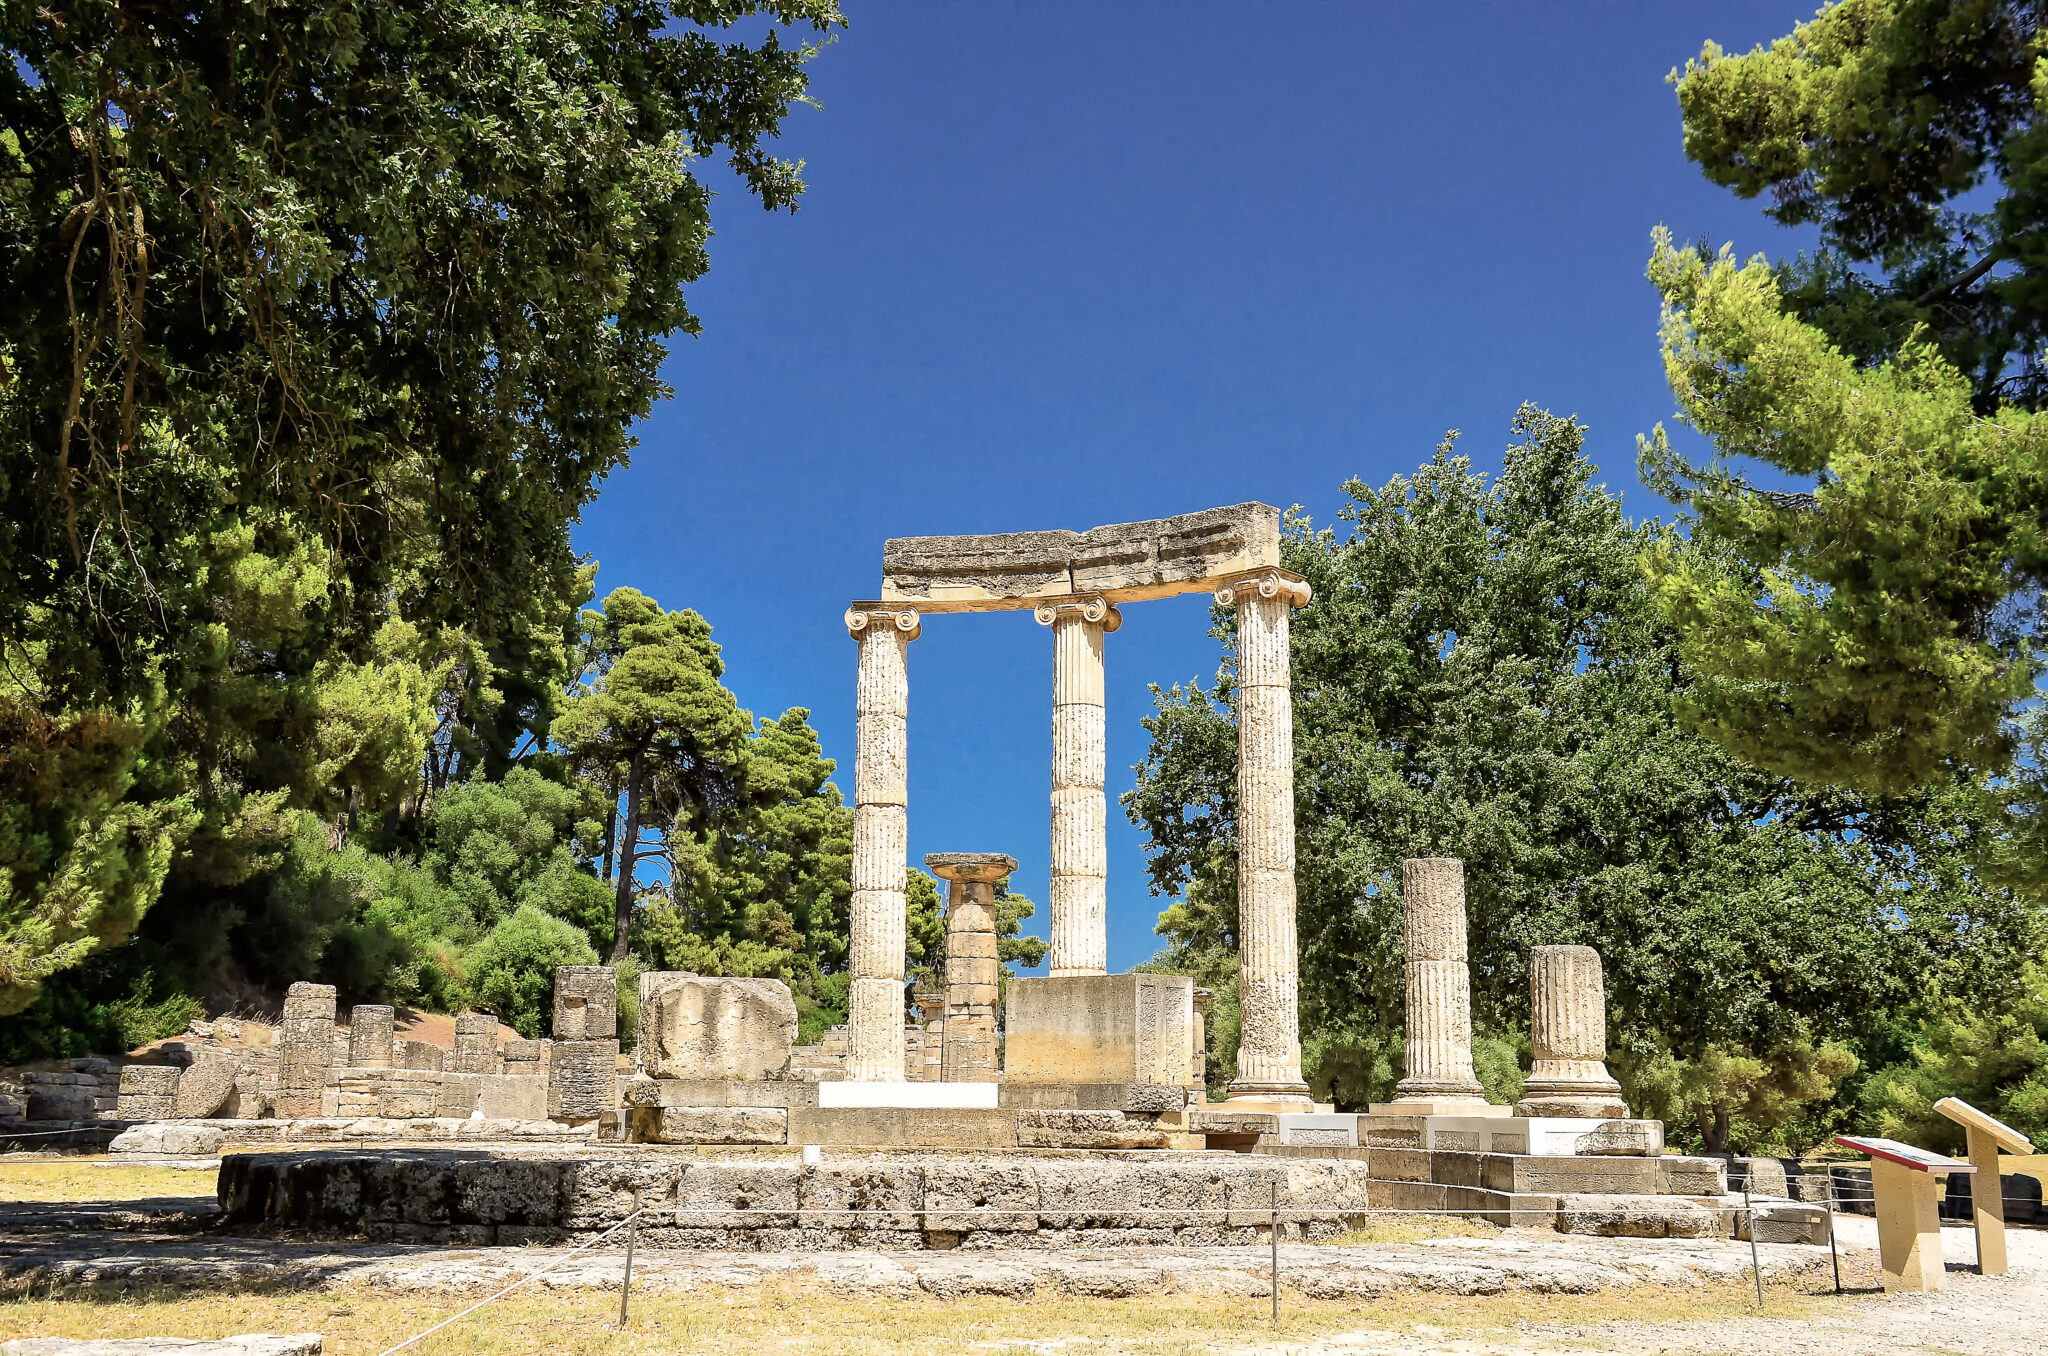 Ταξιδεύοντας απόλαυση στην μαγευτική αρχαία Ολυμπία με τέσσερις τροχούς
